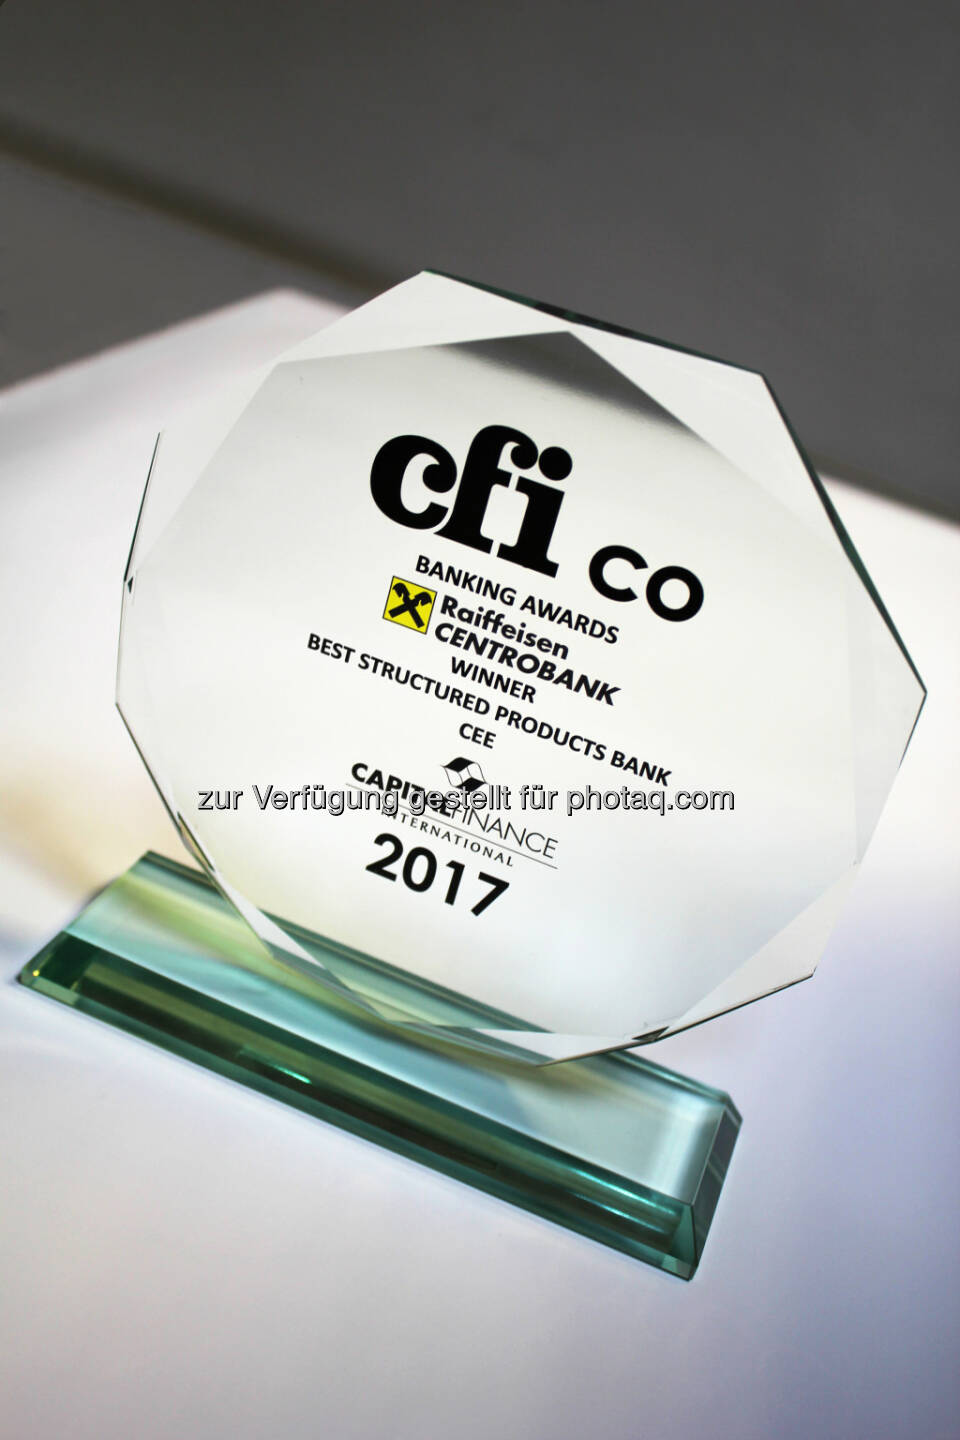 RCB holt CEE-Zertifikate-Award von CFI.co